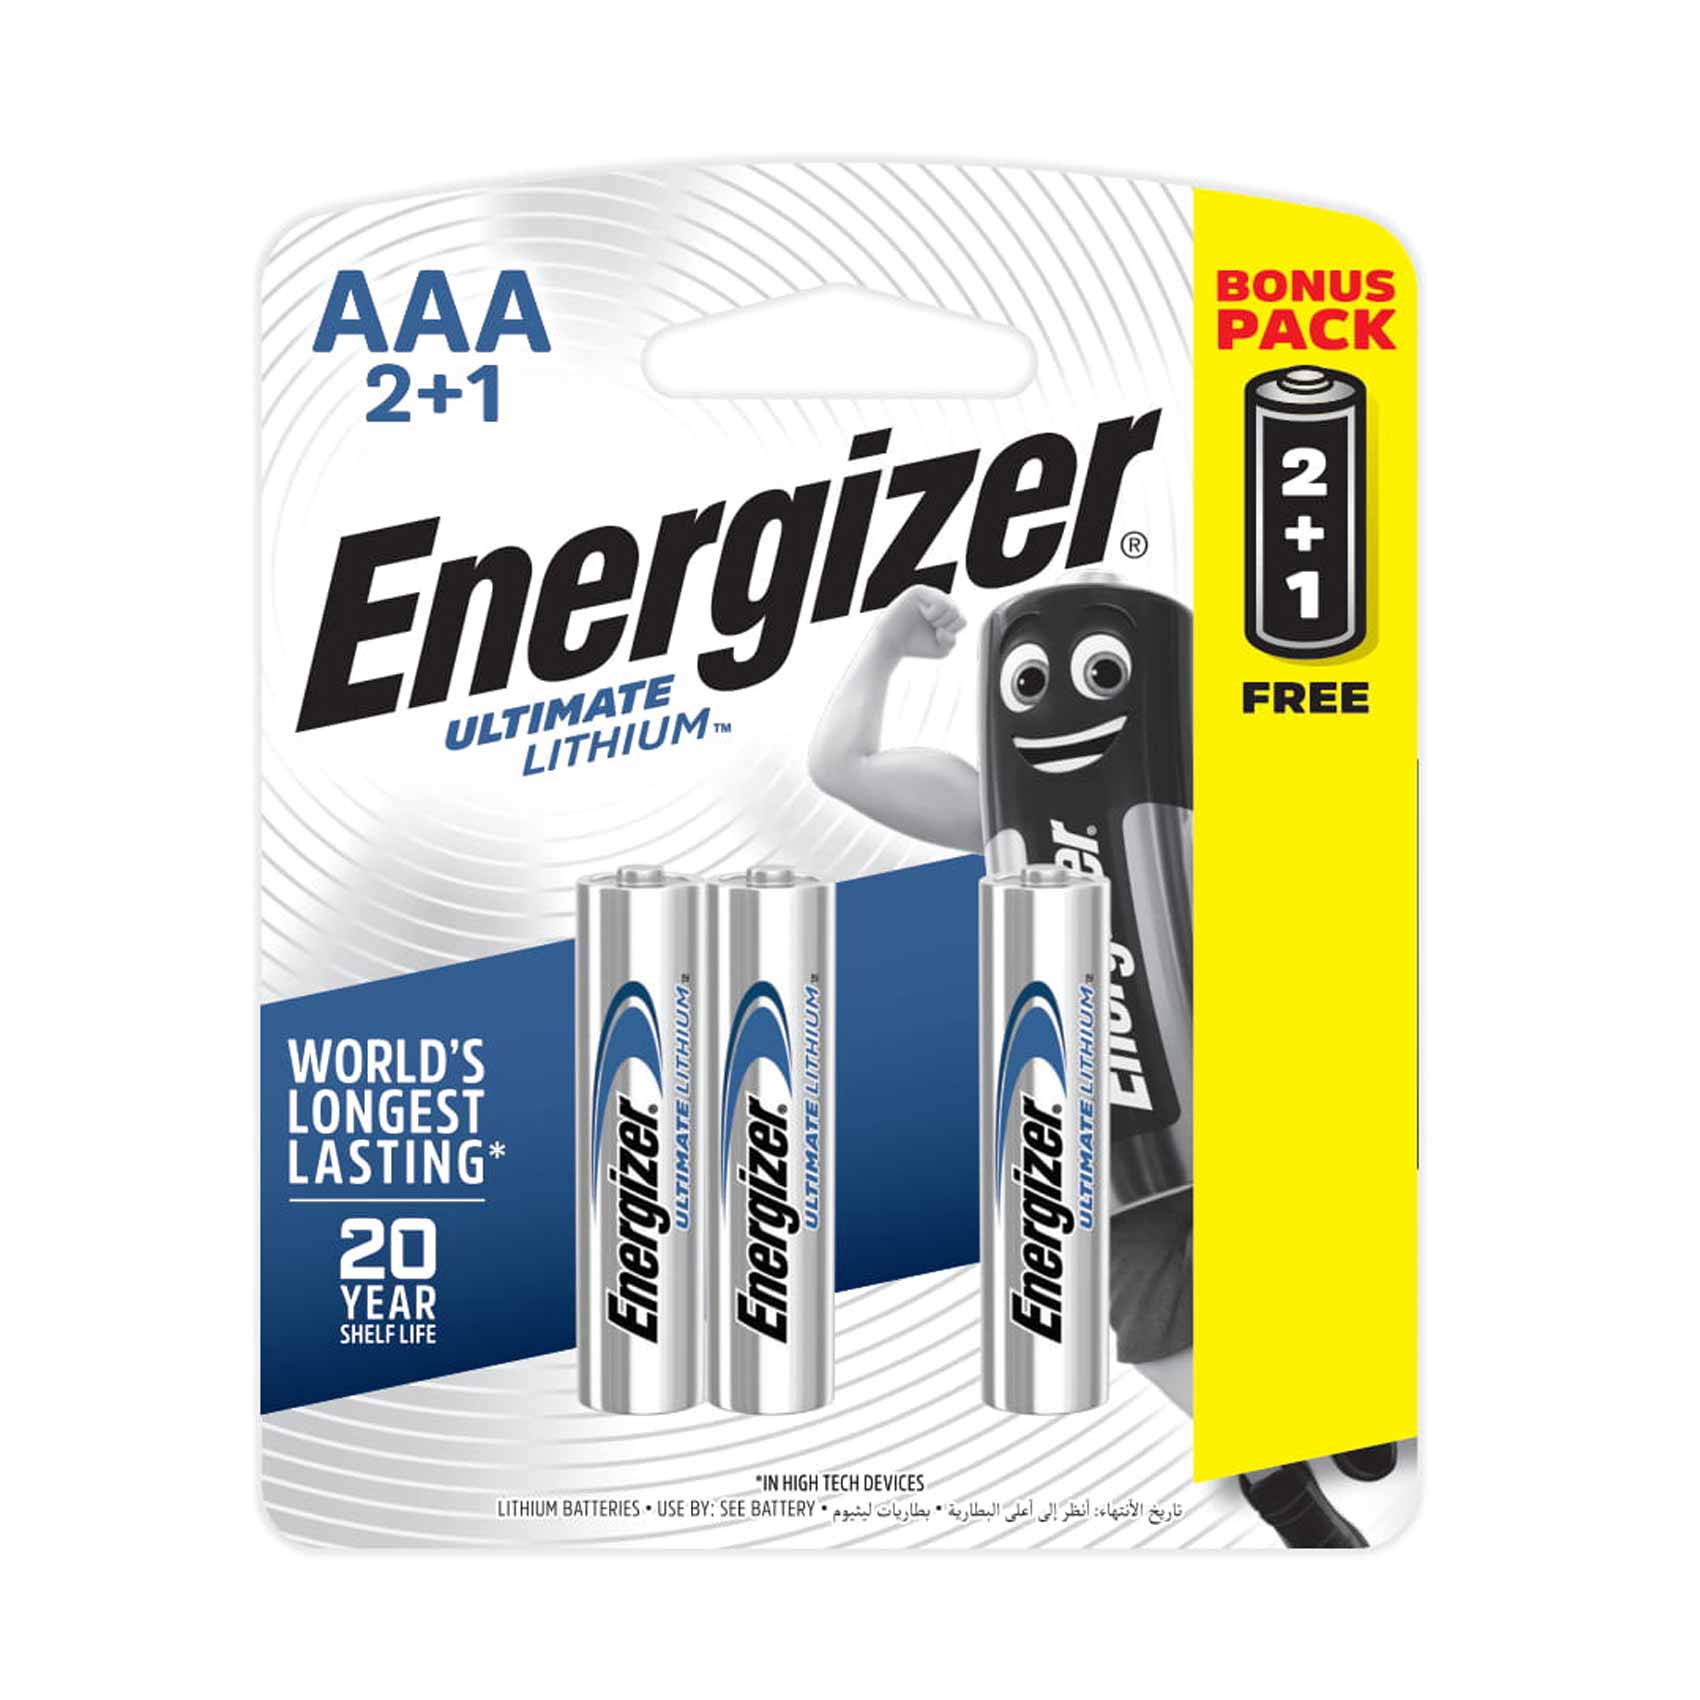 Energizer Ultimate Liyhium AAA 2+1